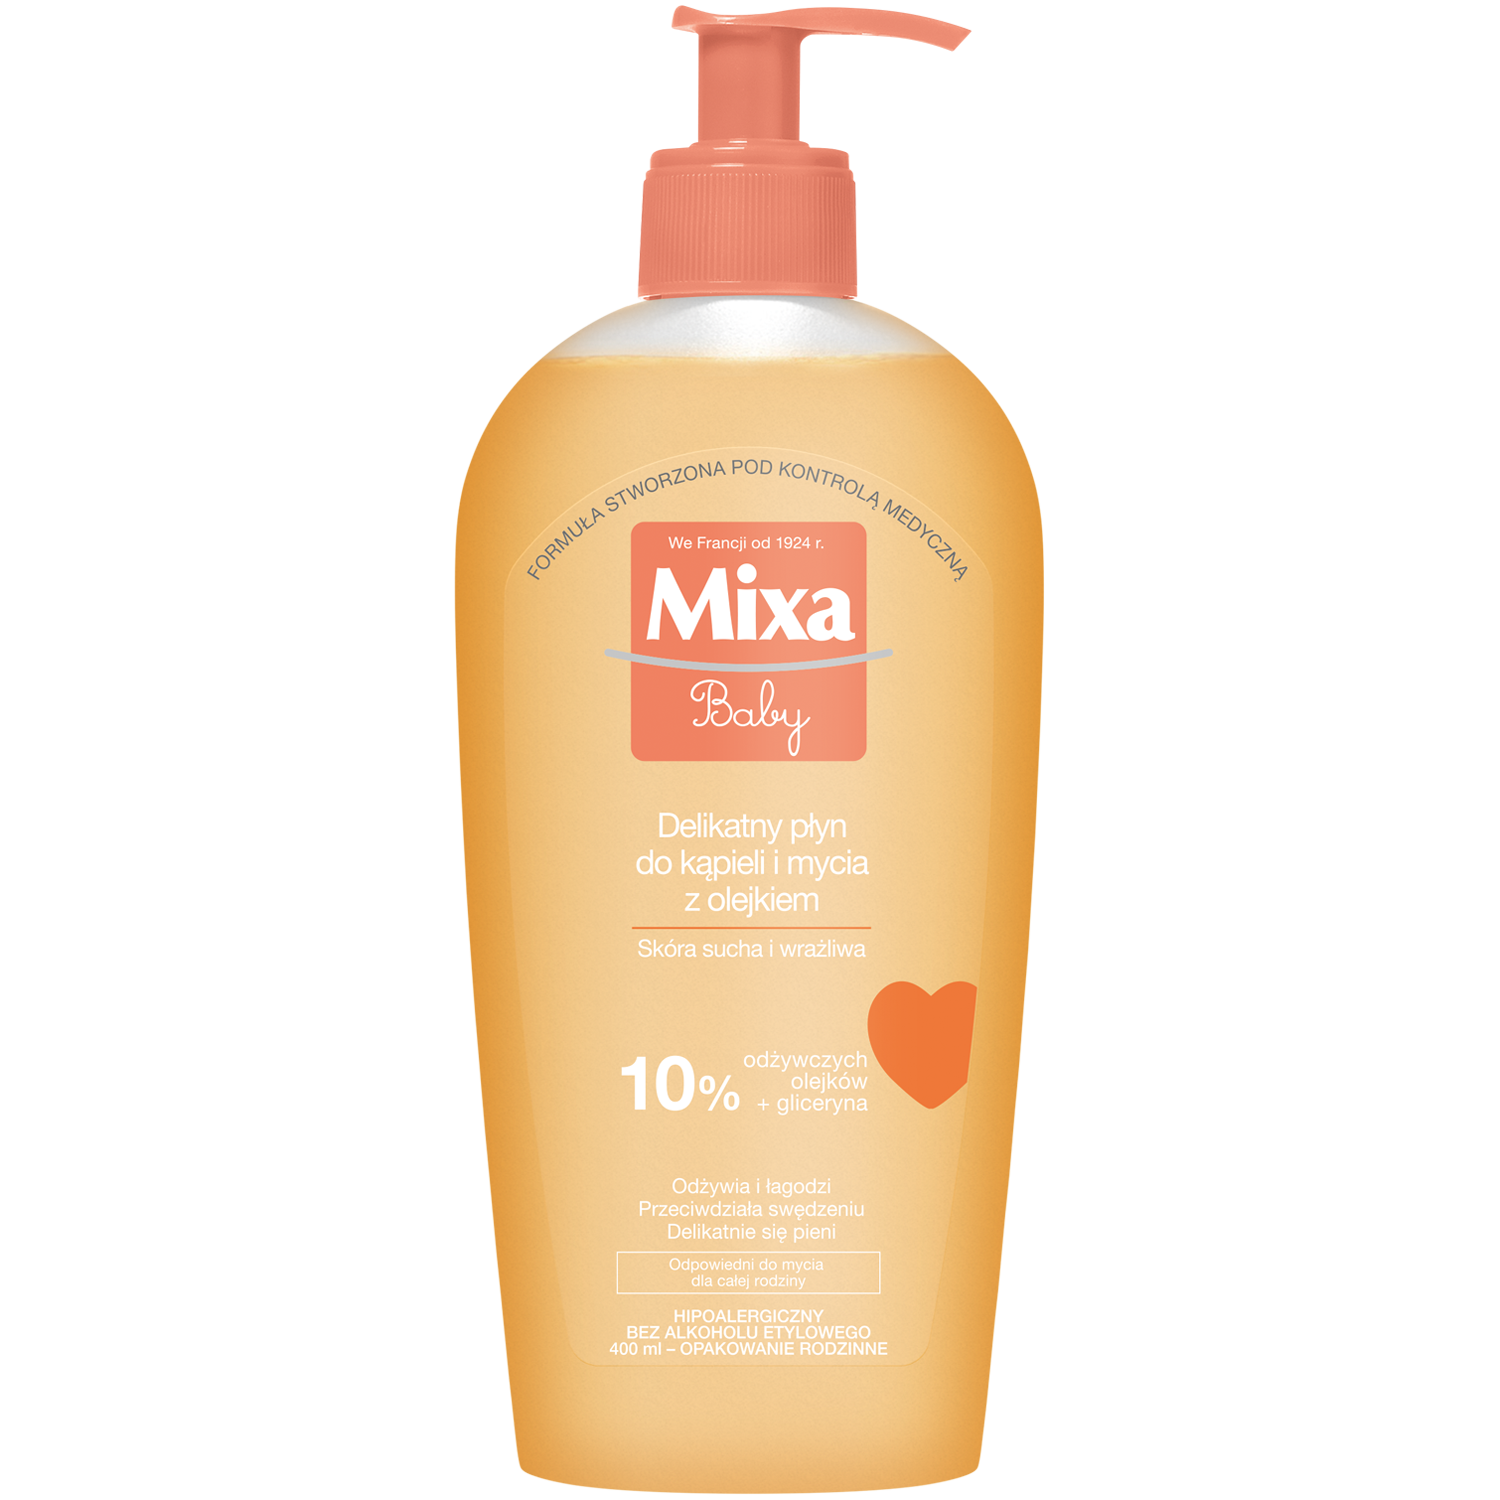 Mixa Baby Жидкость для деликатной стирки с маслом, 400 мл